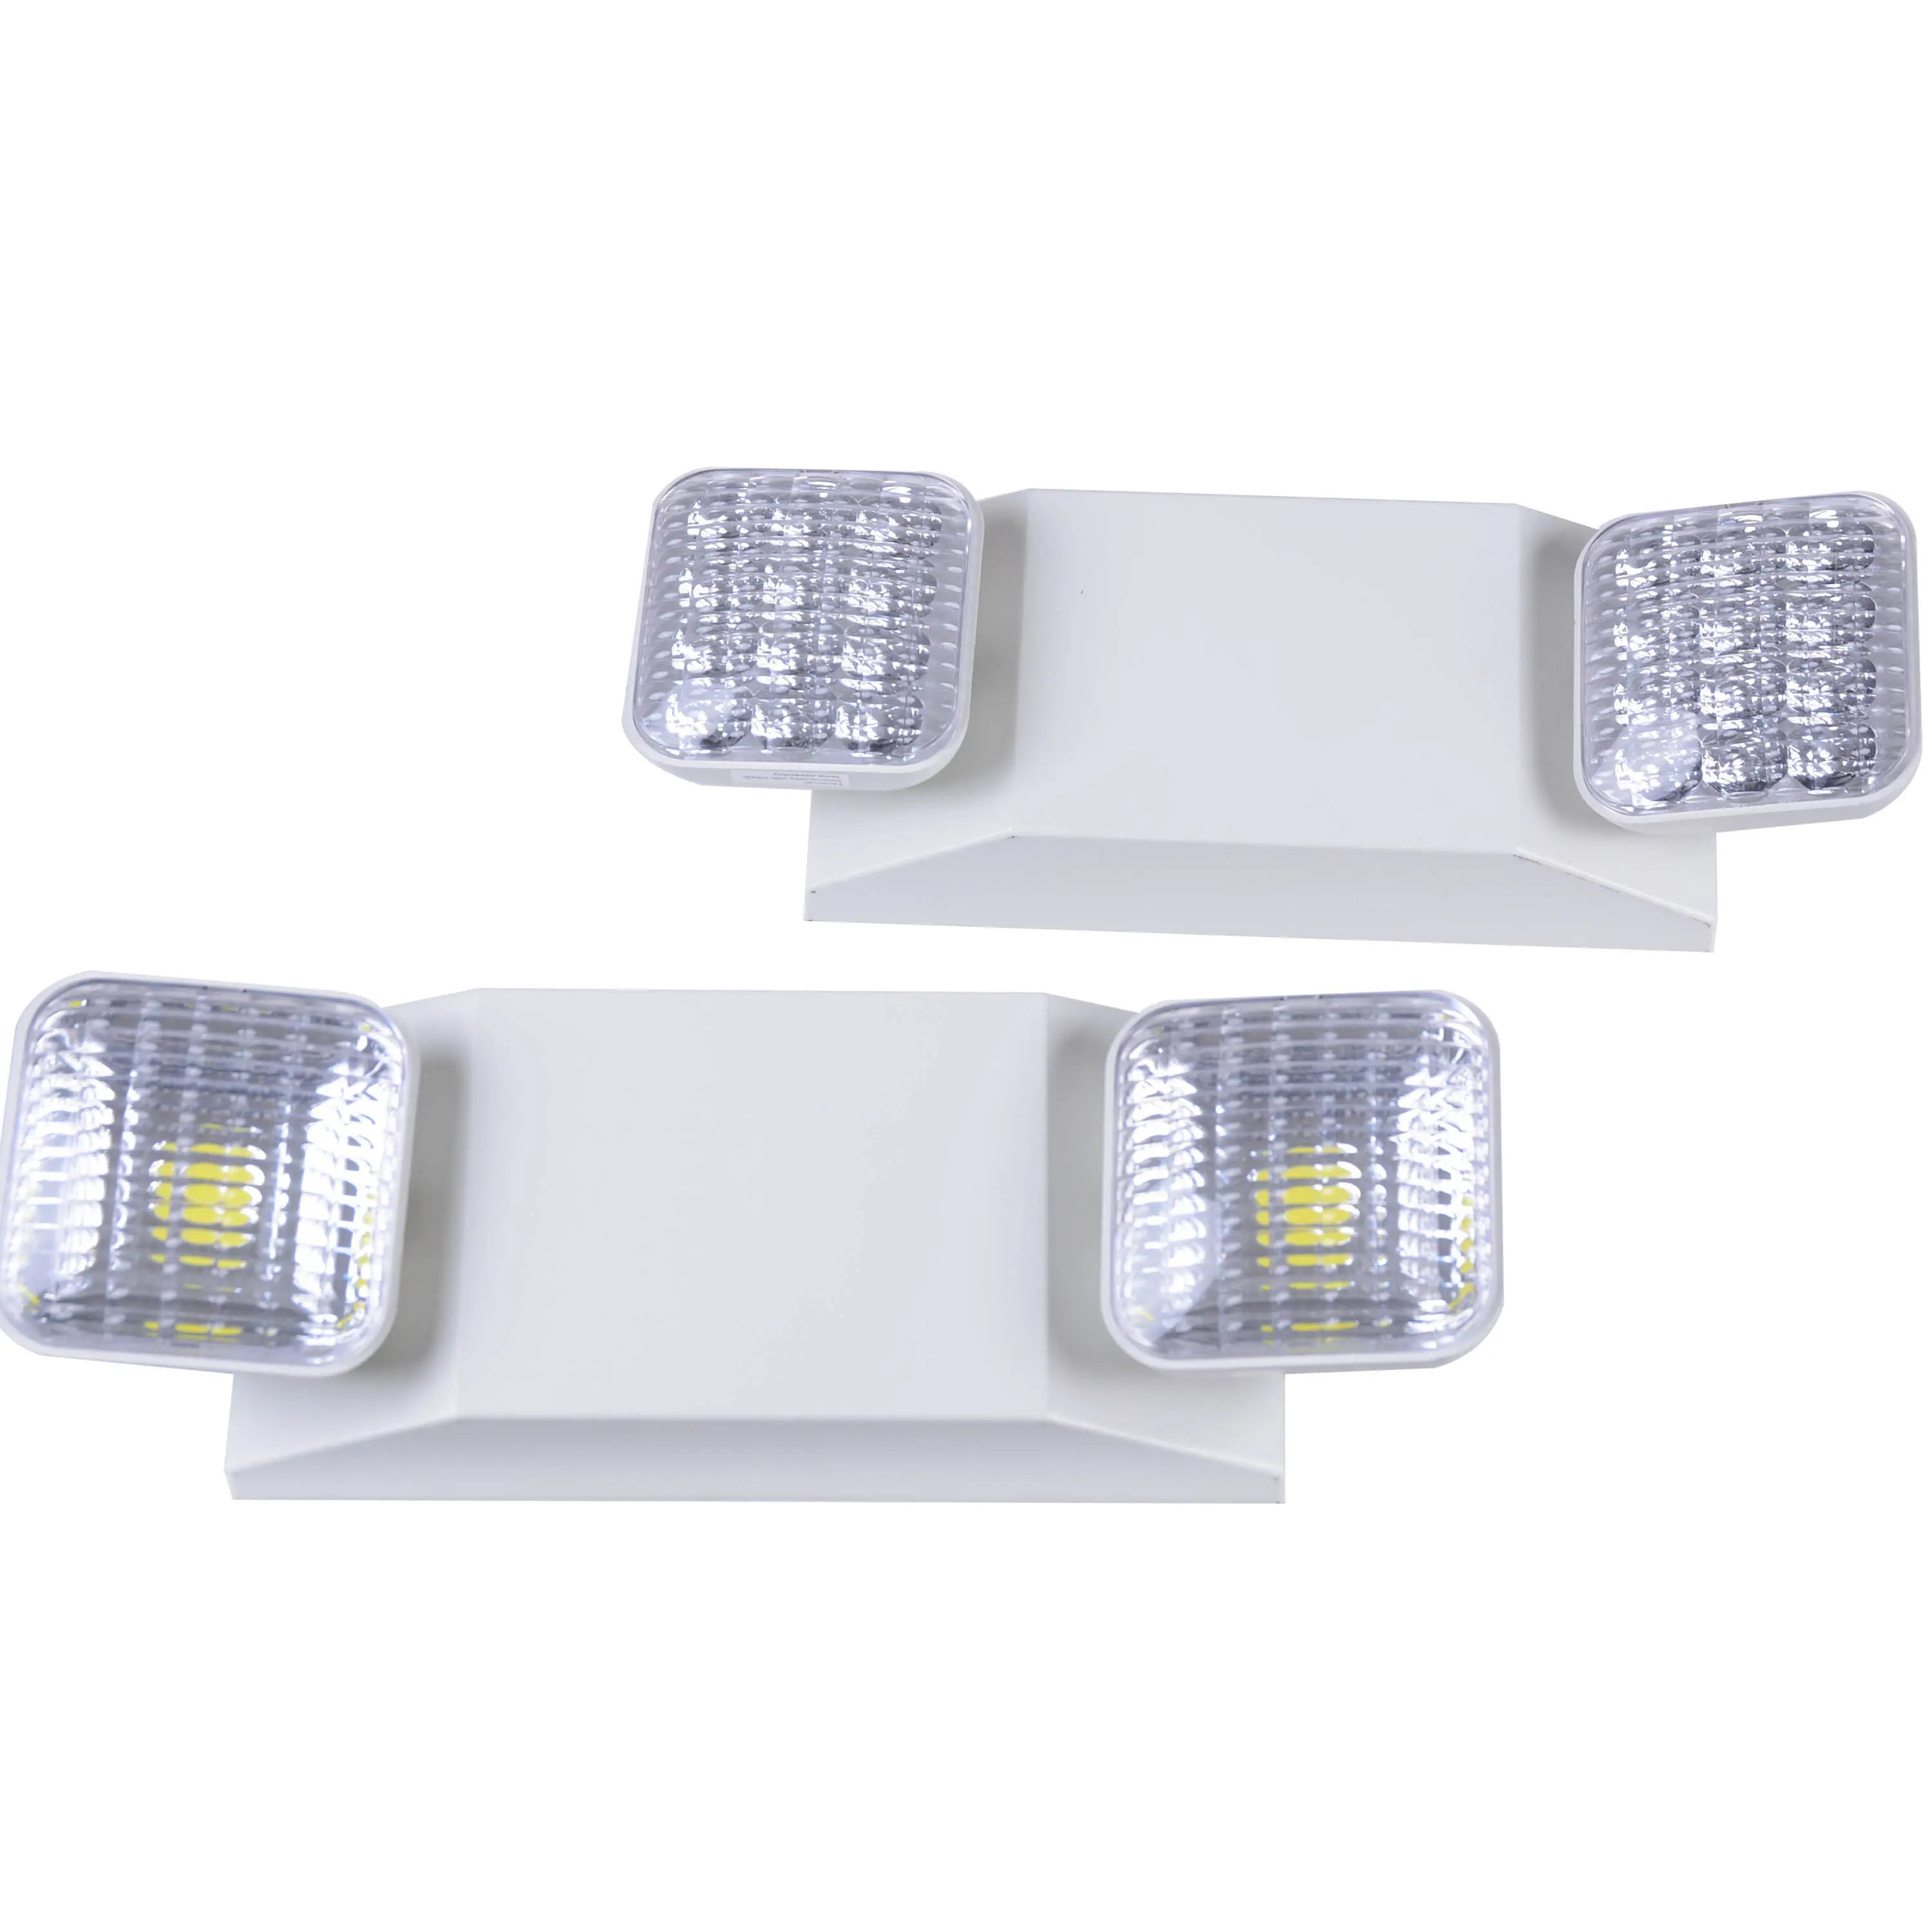 חירום LED אור כפול ראש חירום אור עם ממשק משתמש רשום led נטענת חירום אור